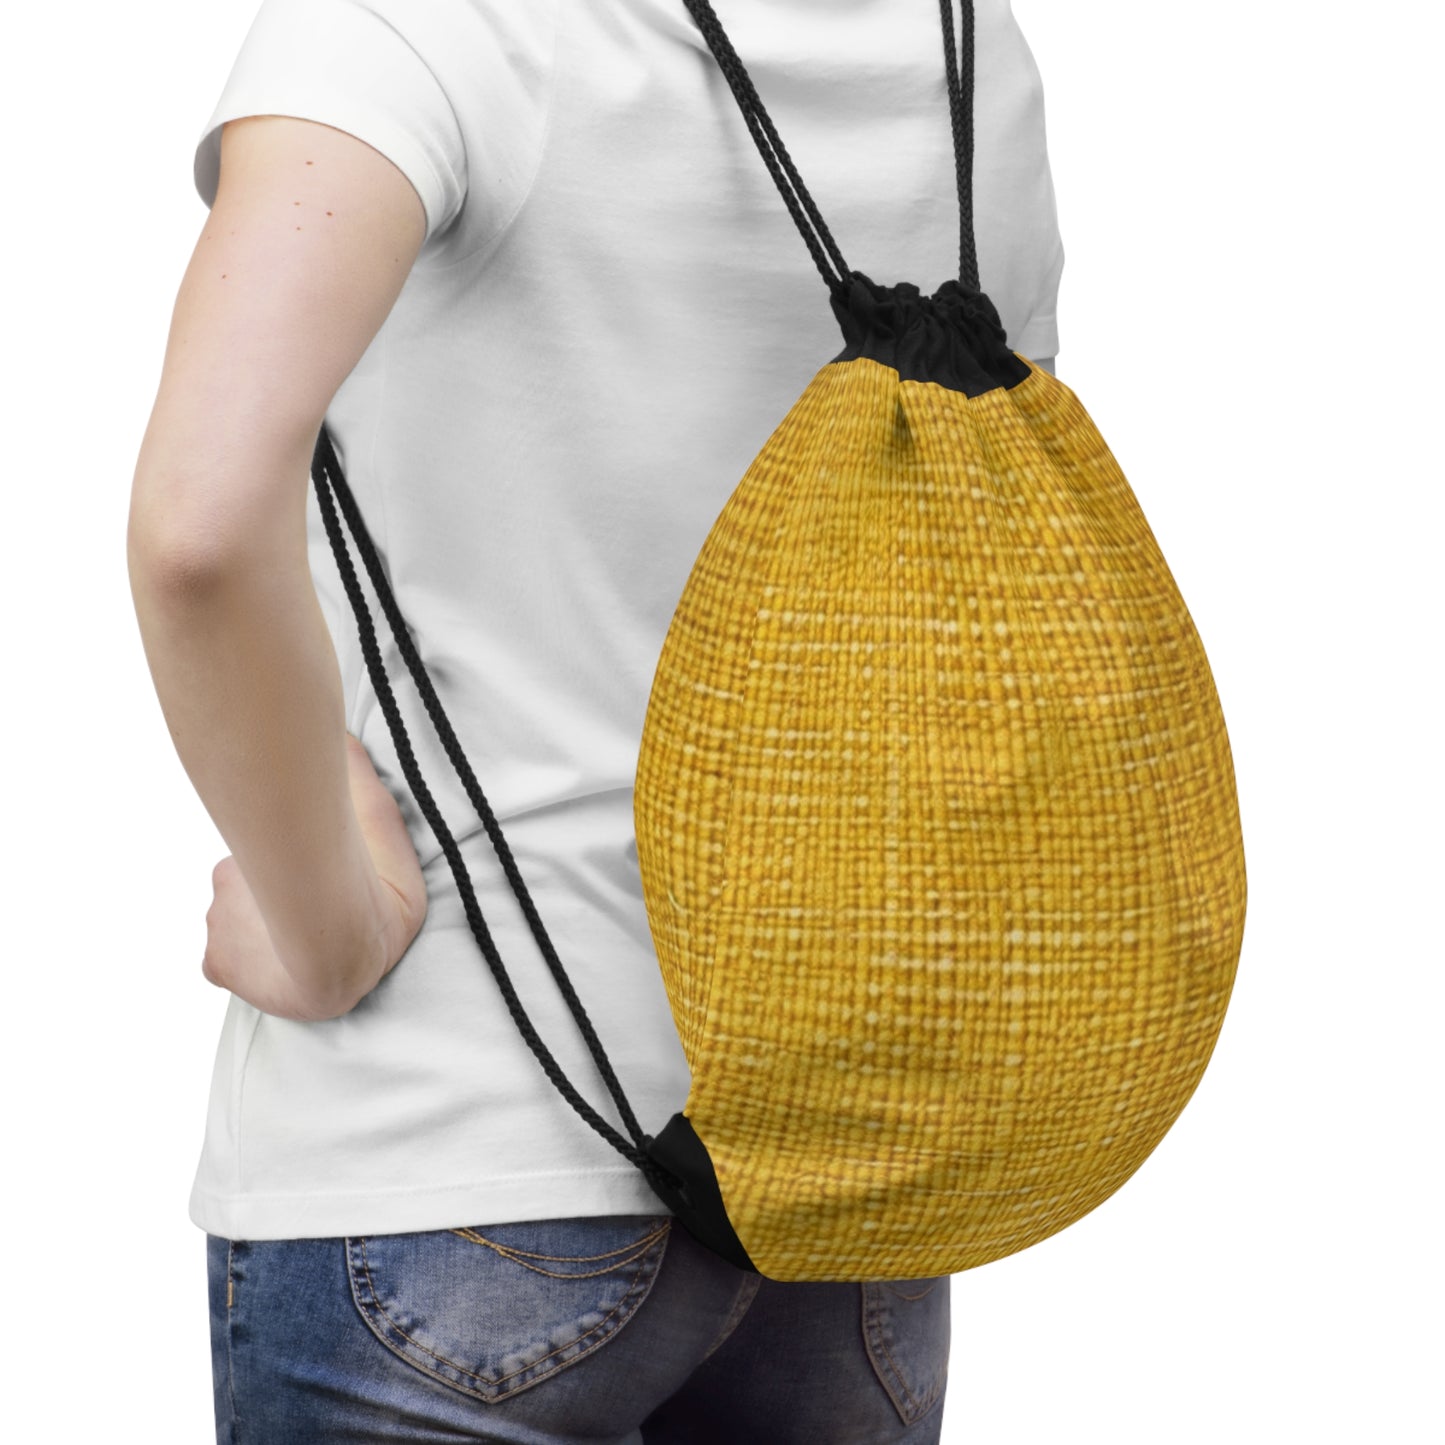 Radiant Sunny Yellow: Denim-Inspired Summer Fabric - Drawstring Bag